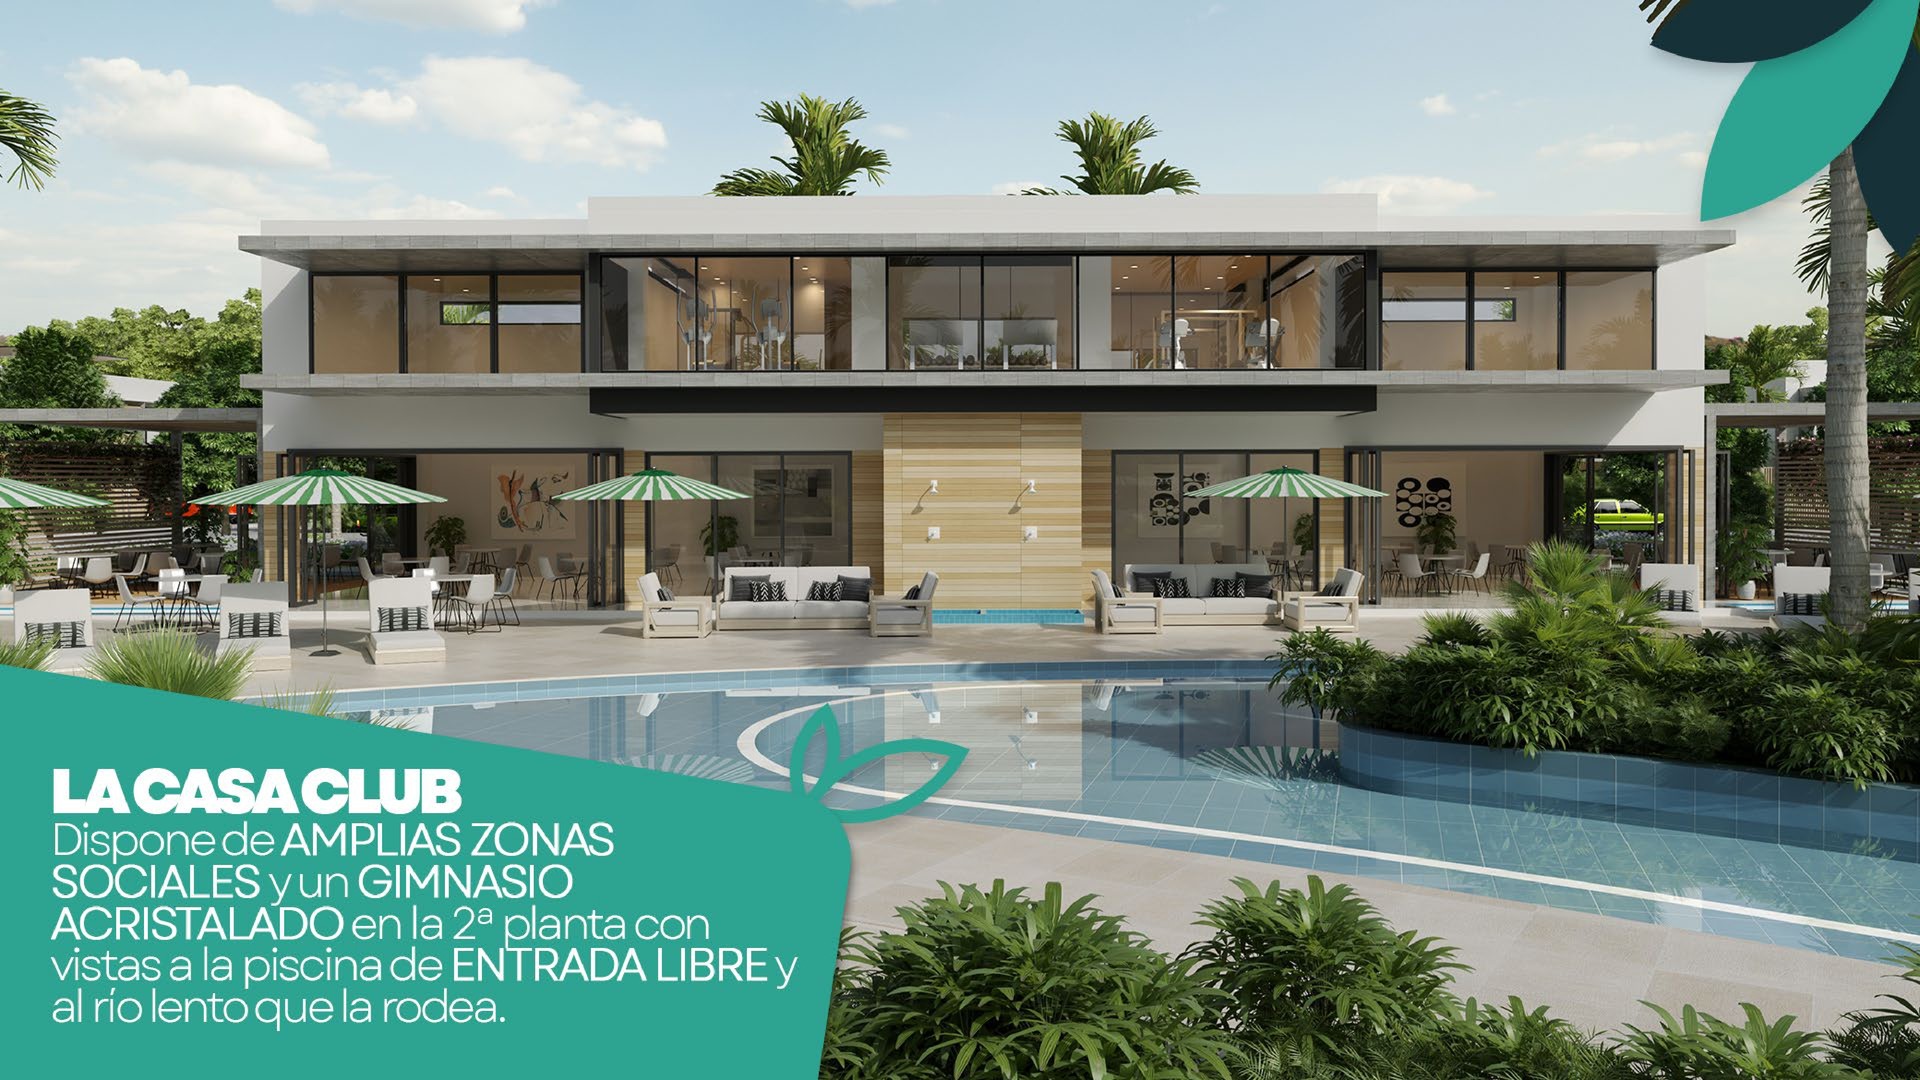 casas vacacionales y villas - Hermoso Proyecto En Construccion En Punta Cana, Villas De 2 Y 3 Hab.  5